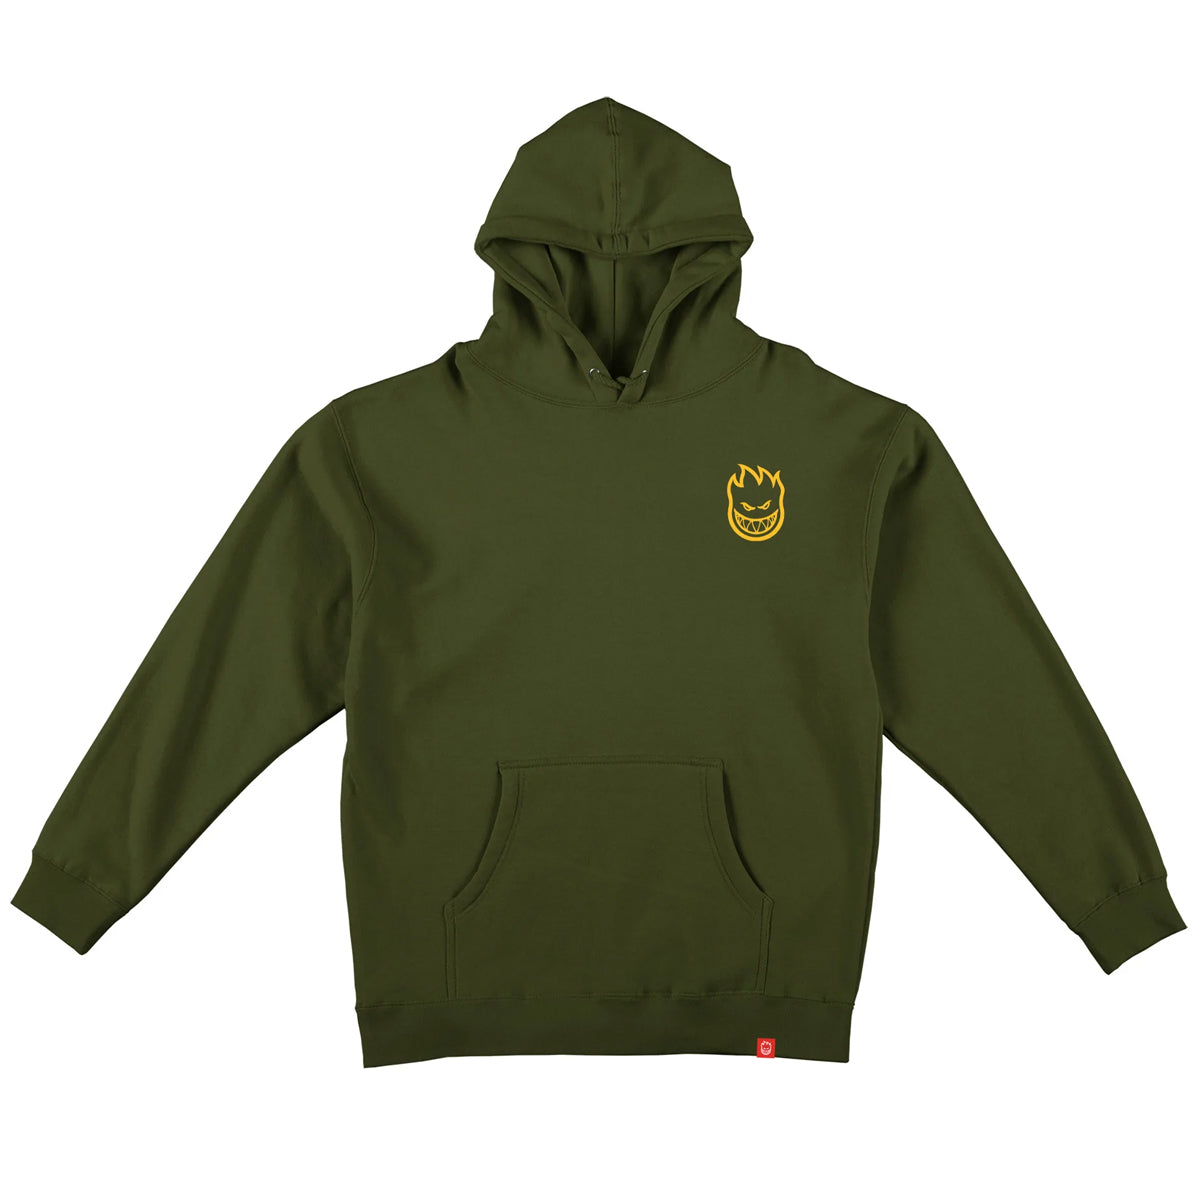 Spitfire Classic Vortex Hooded Sweatshirt (Army Green) - Apple Valley Emporium